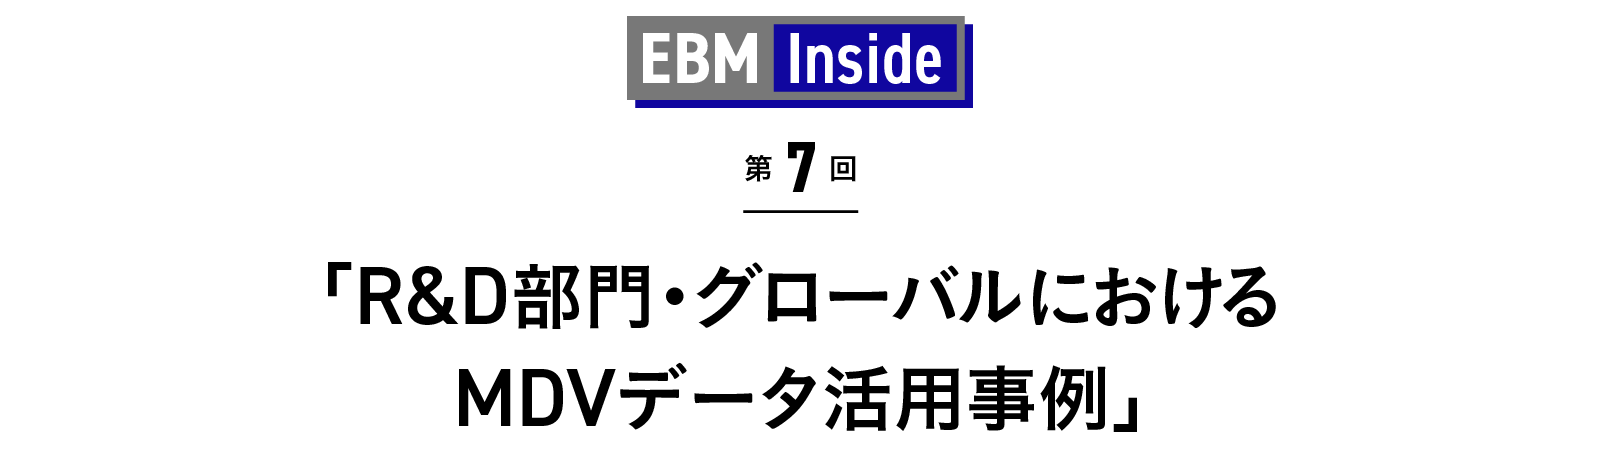 「R&D部門・グローバルにおけるMDVデータ活用事例」 EBM Inside 第7回